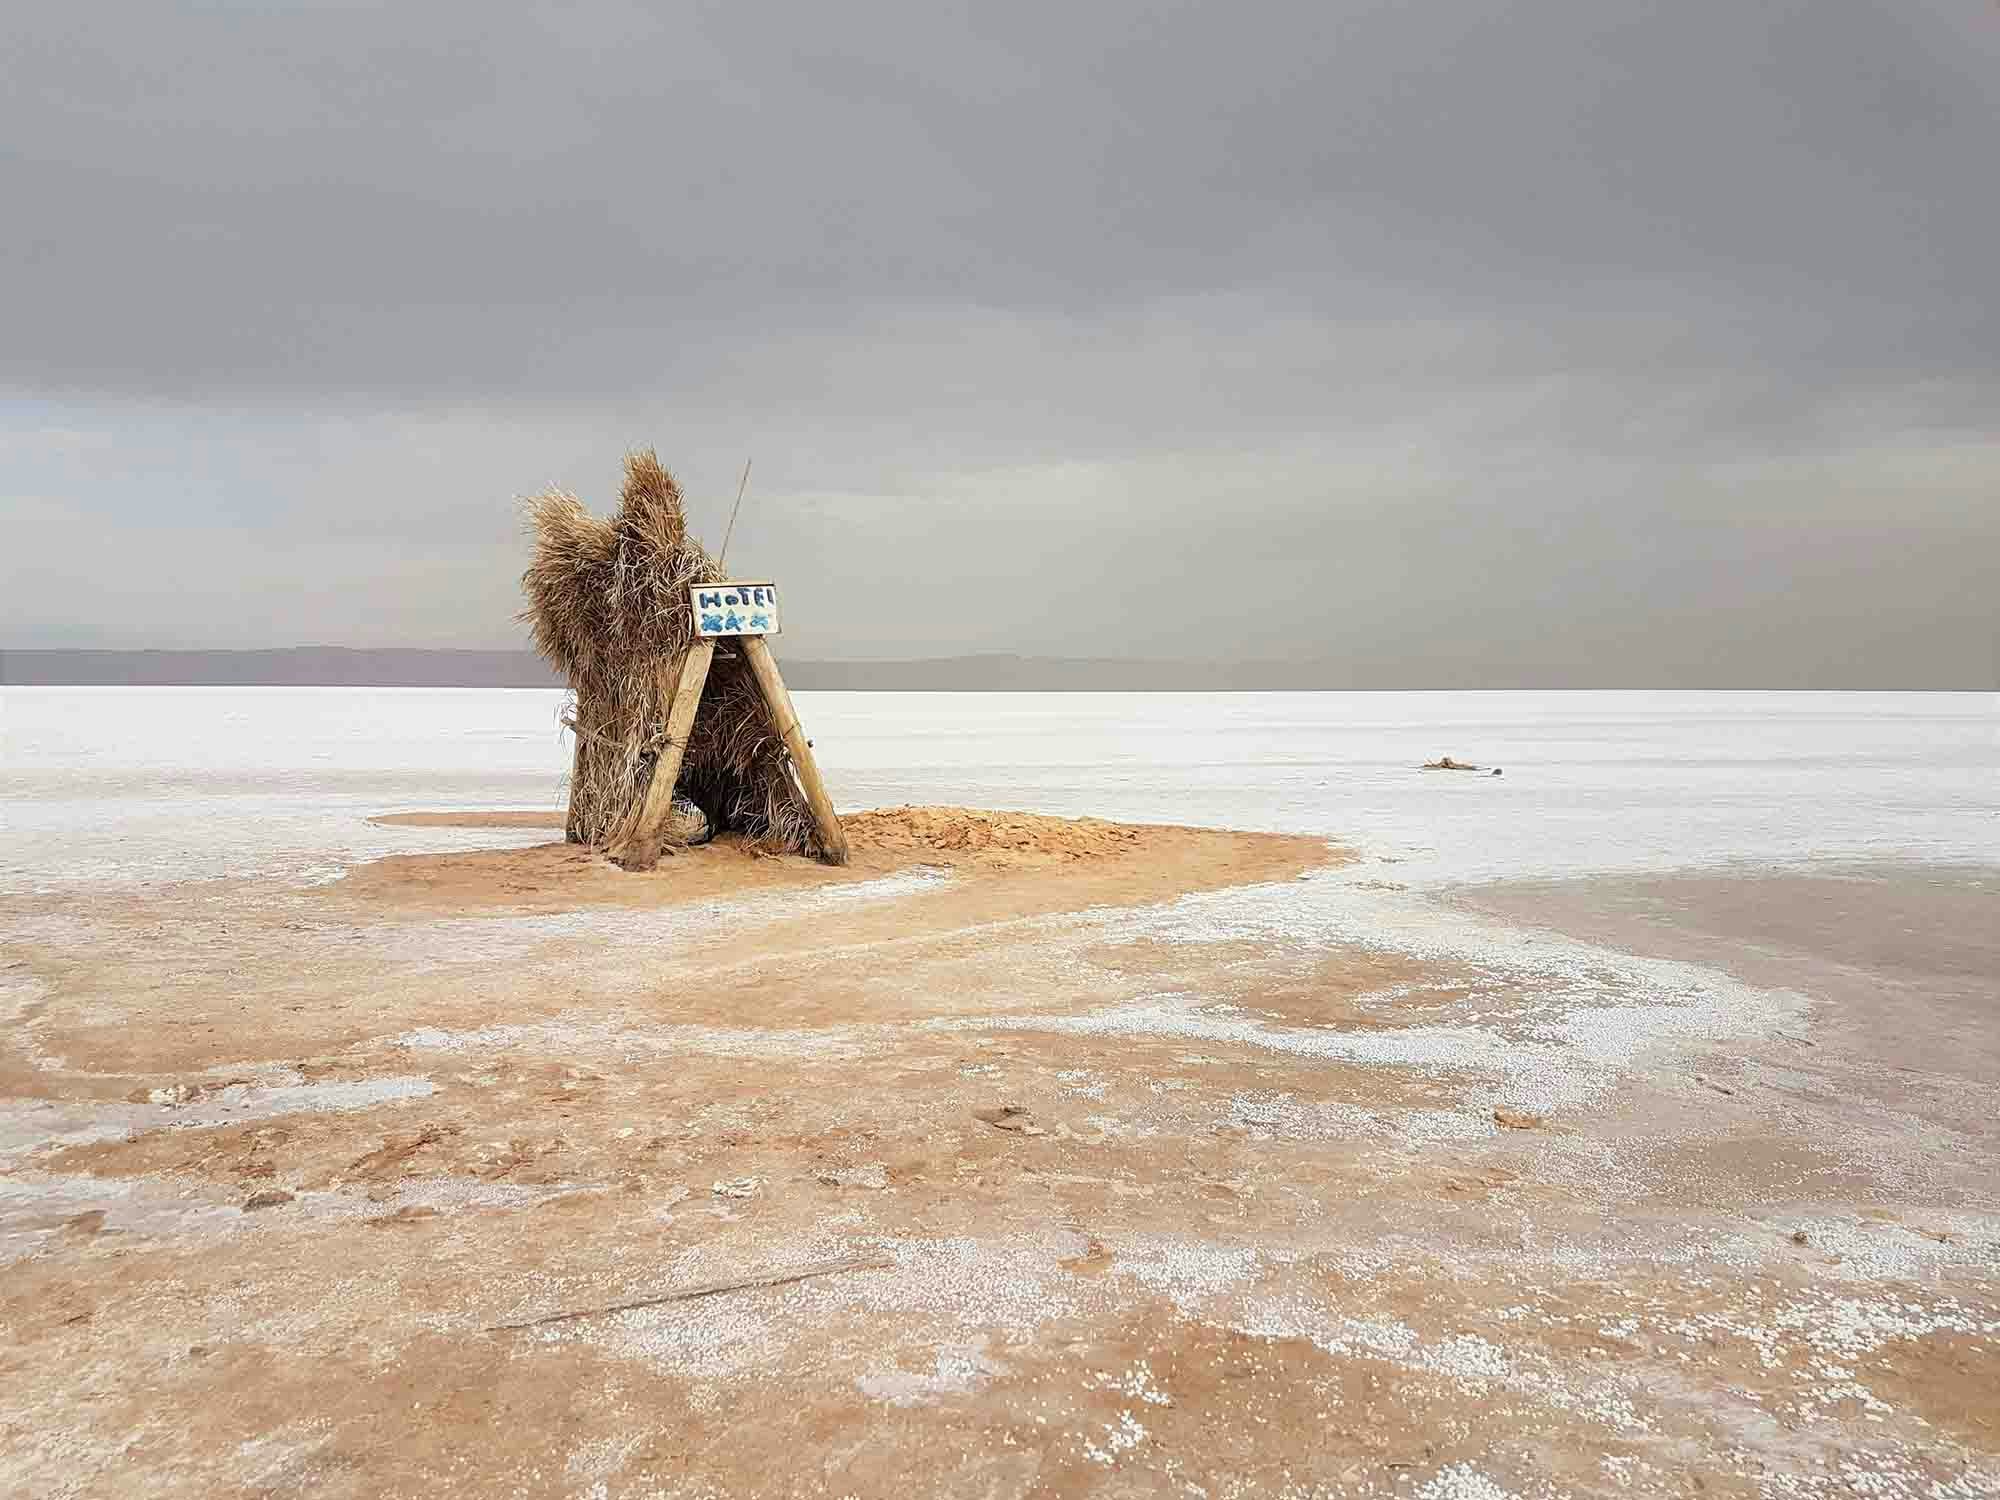 Salt lake in the desert